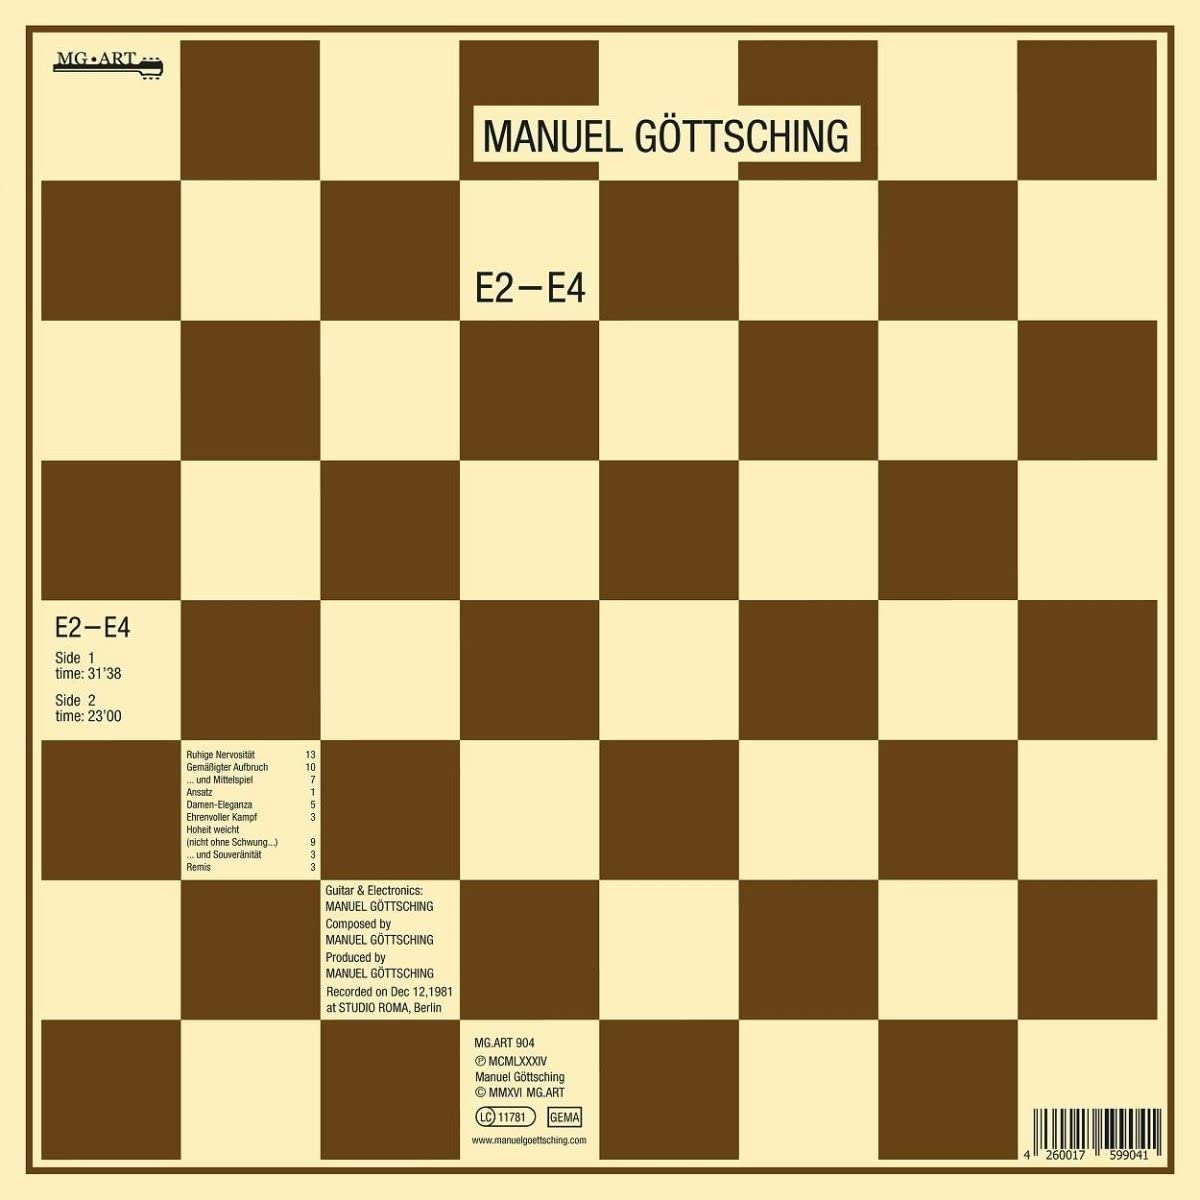 MANUEL GÖTTSCHING - E2-E4 Vinyl LP